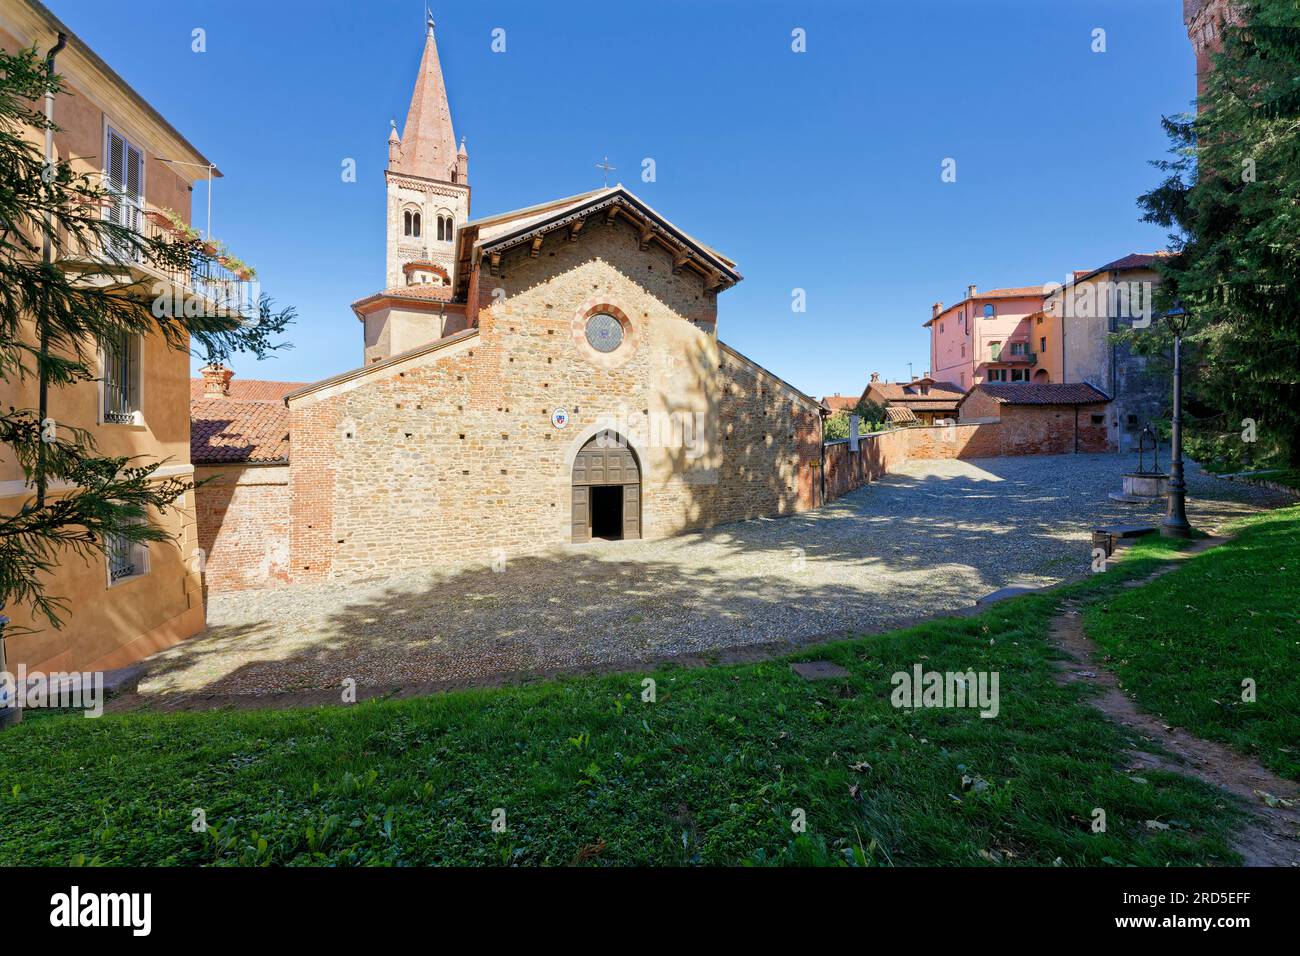 Church, Chiesa di San Giovanni, Saluzzo, Province of Cuneo, Piedmont, Italy Stock Photo